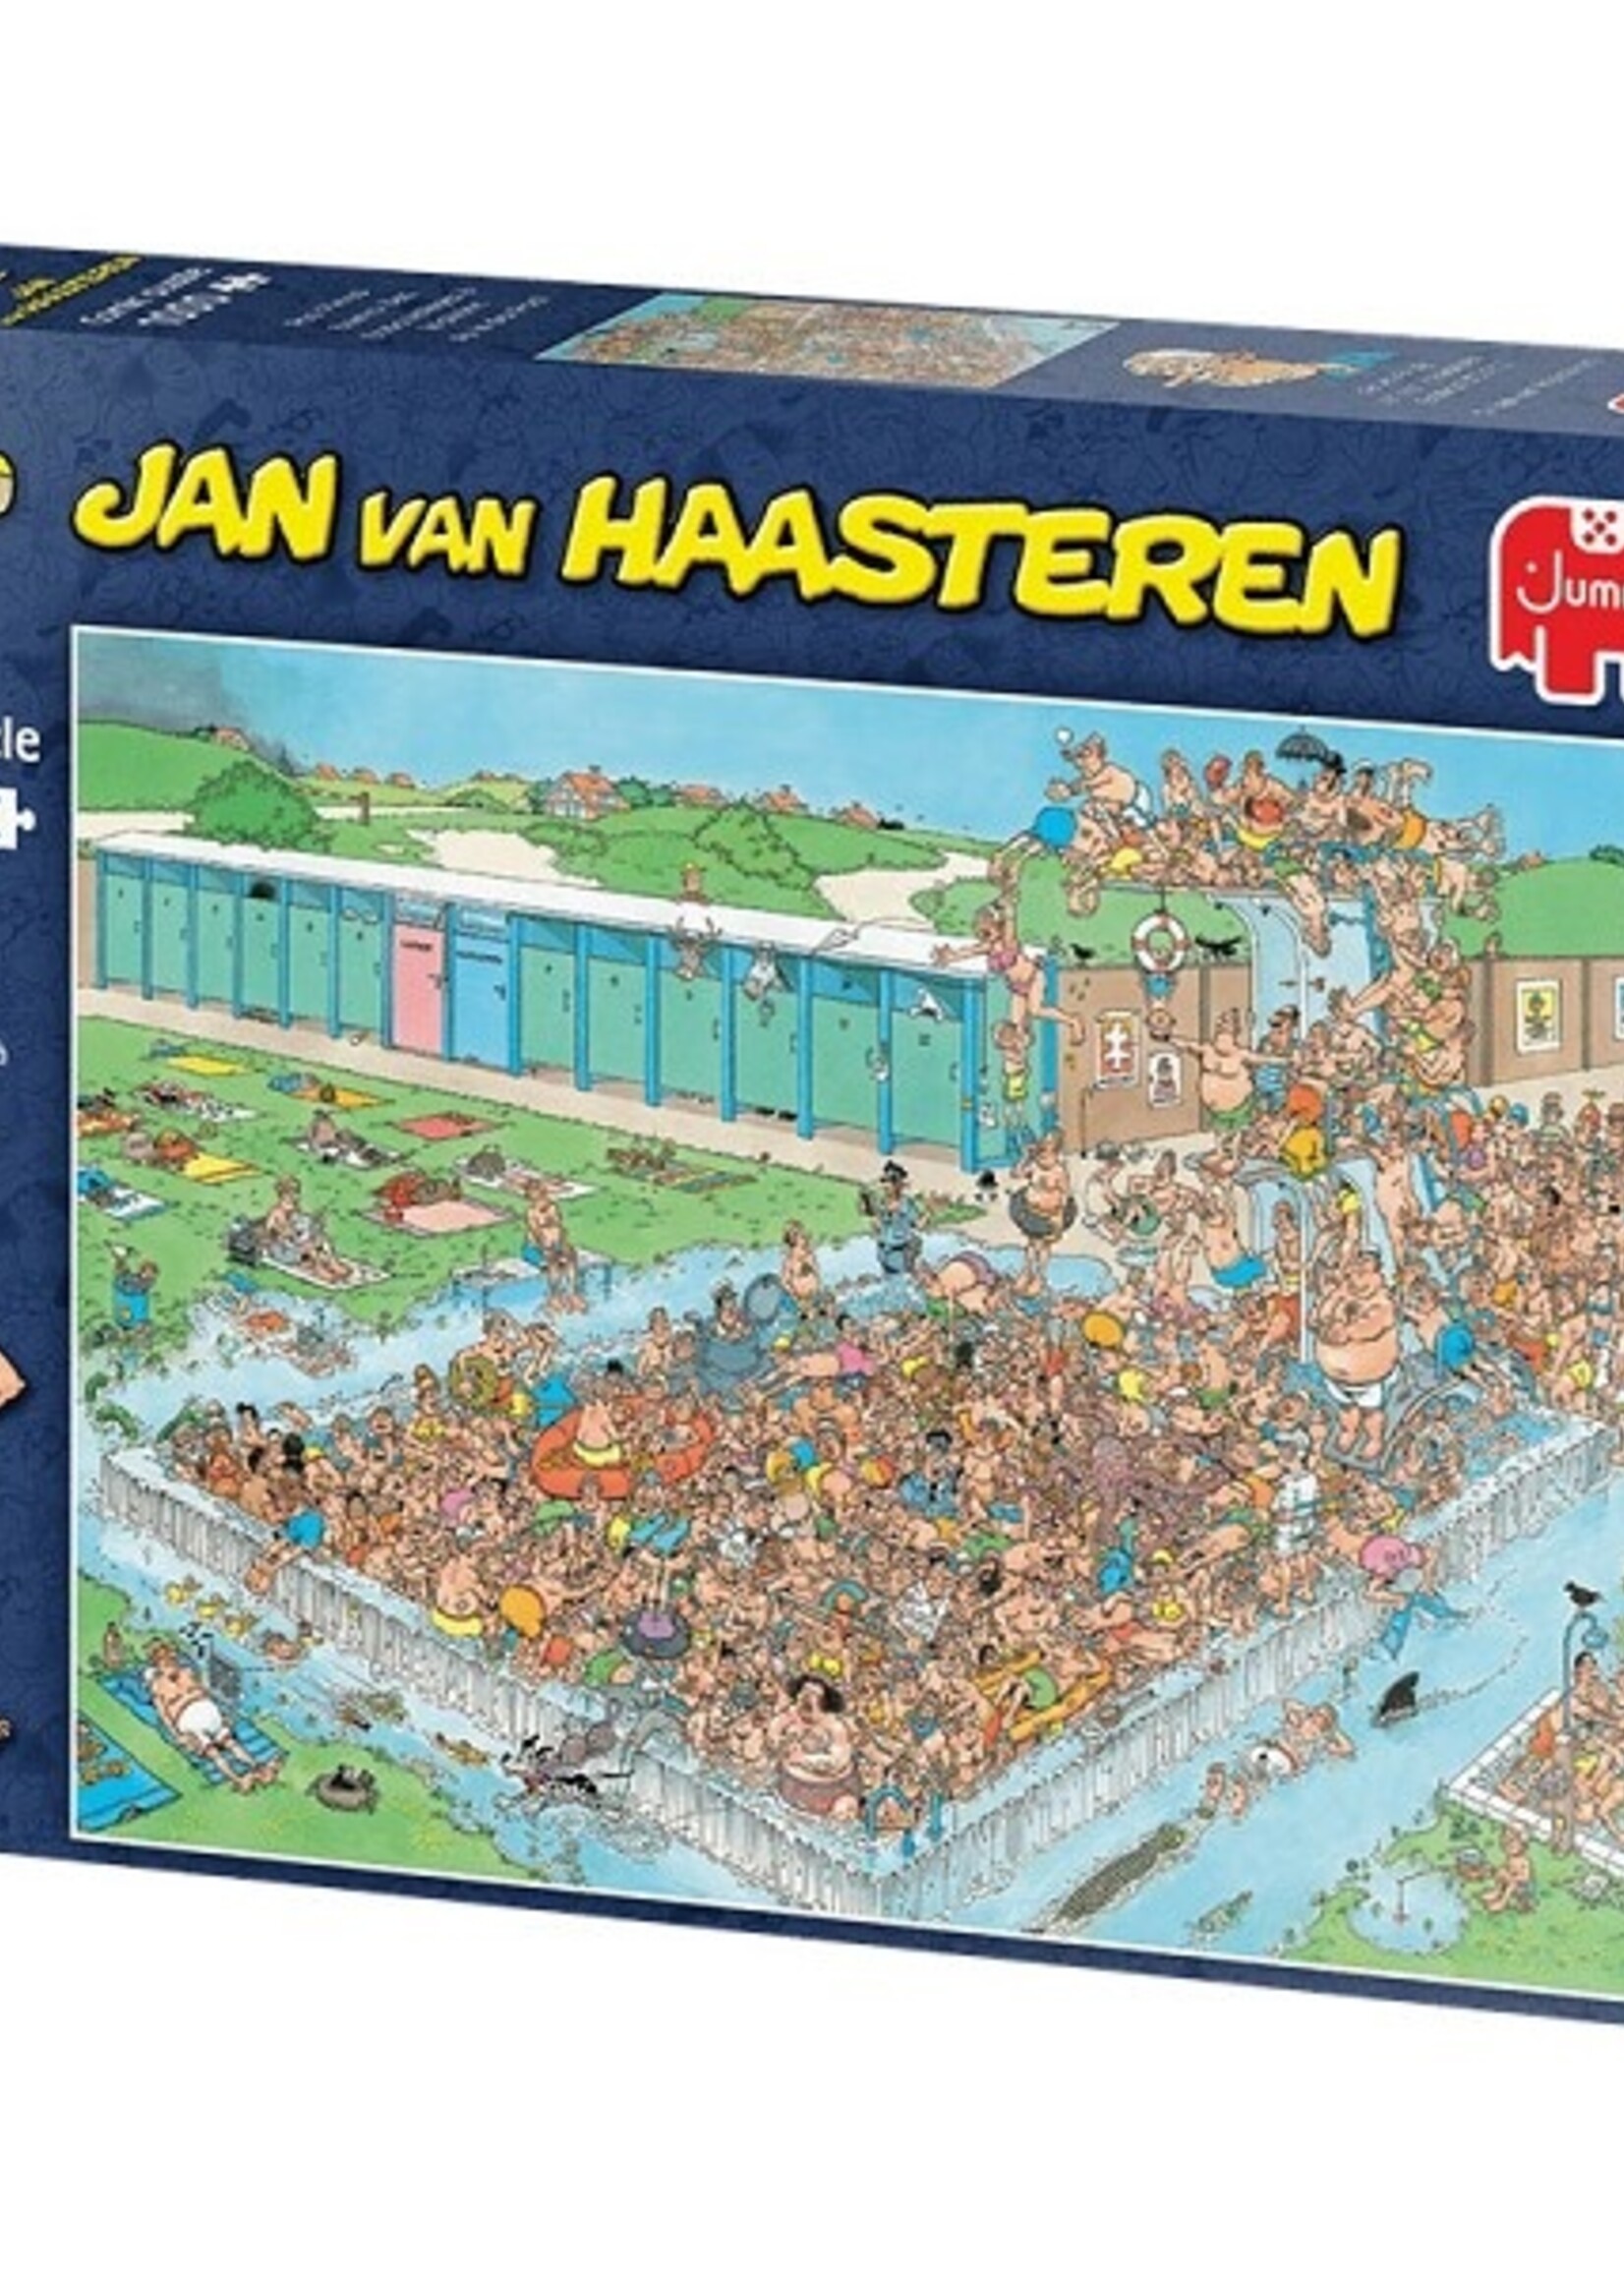 Jumbo Jan van Haasteren puzzel Bomvol bad 1000 stukjes